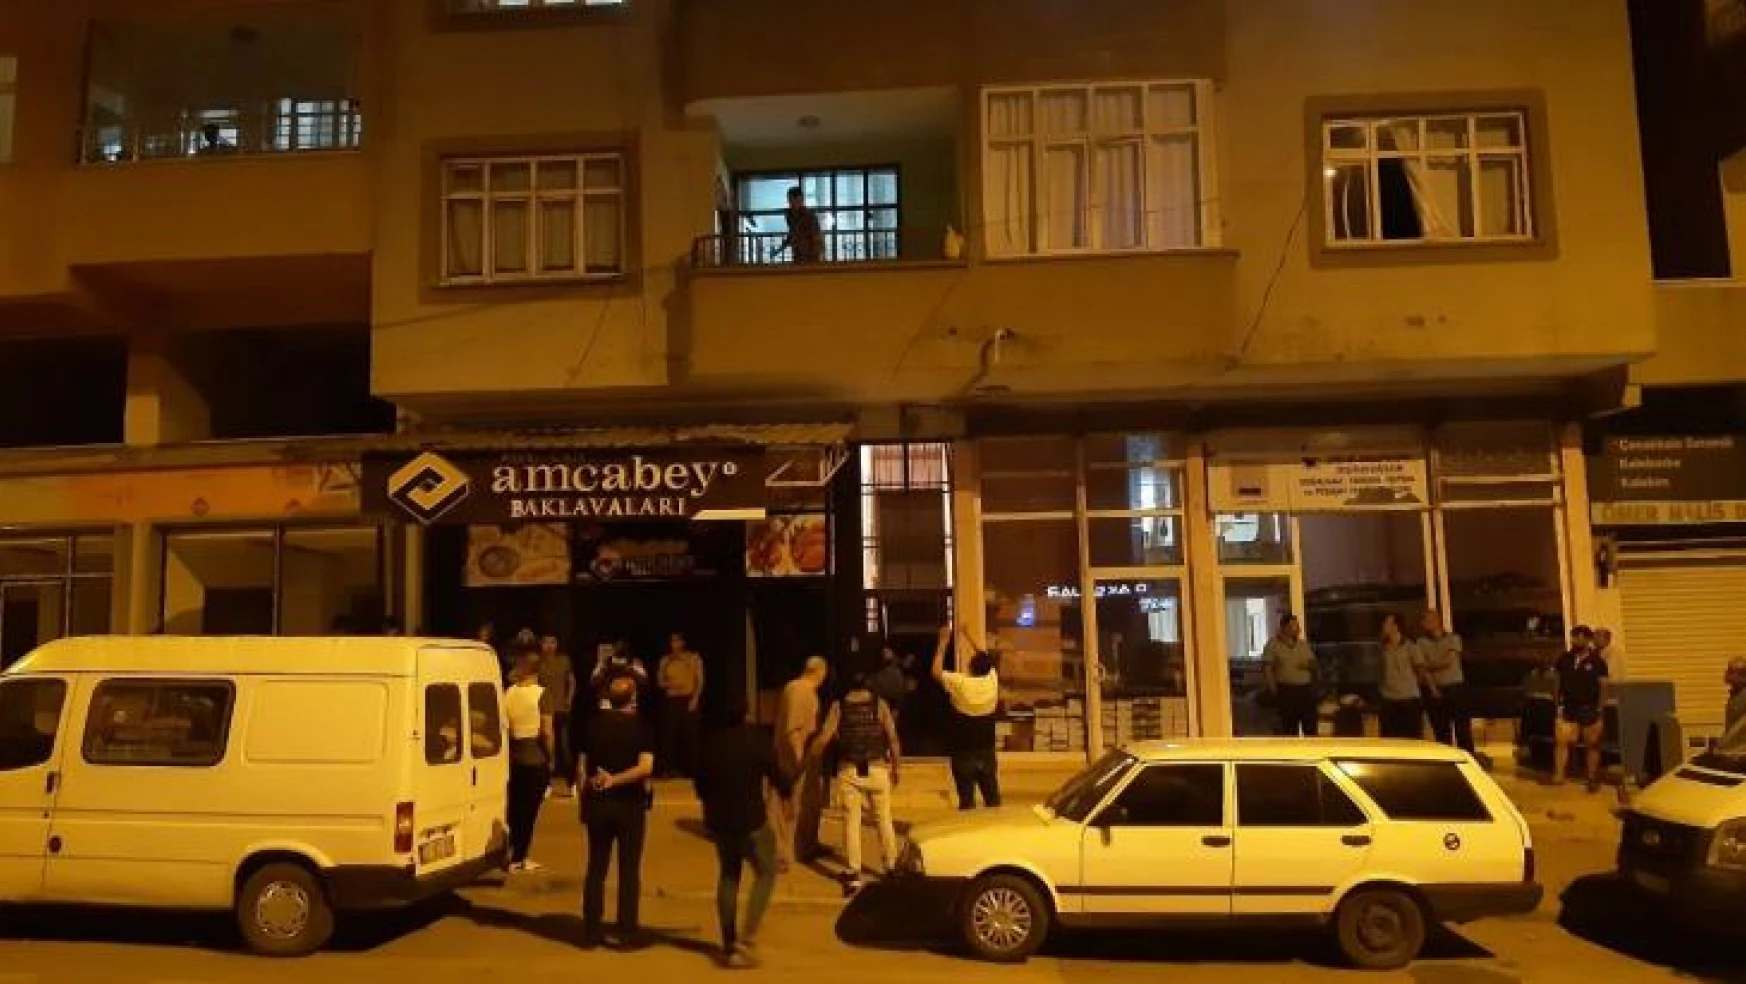 Gaziantep'te ailesini rehin alan şahıs polise teslim oldu